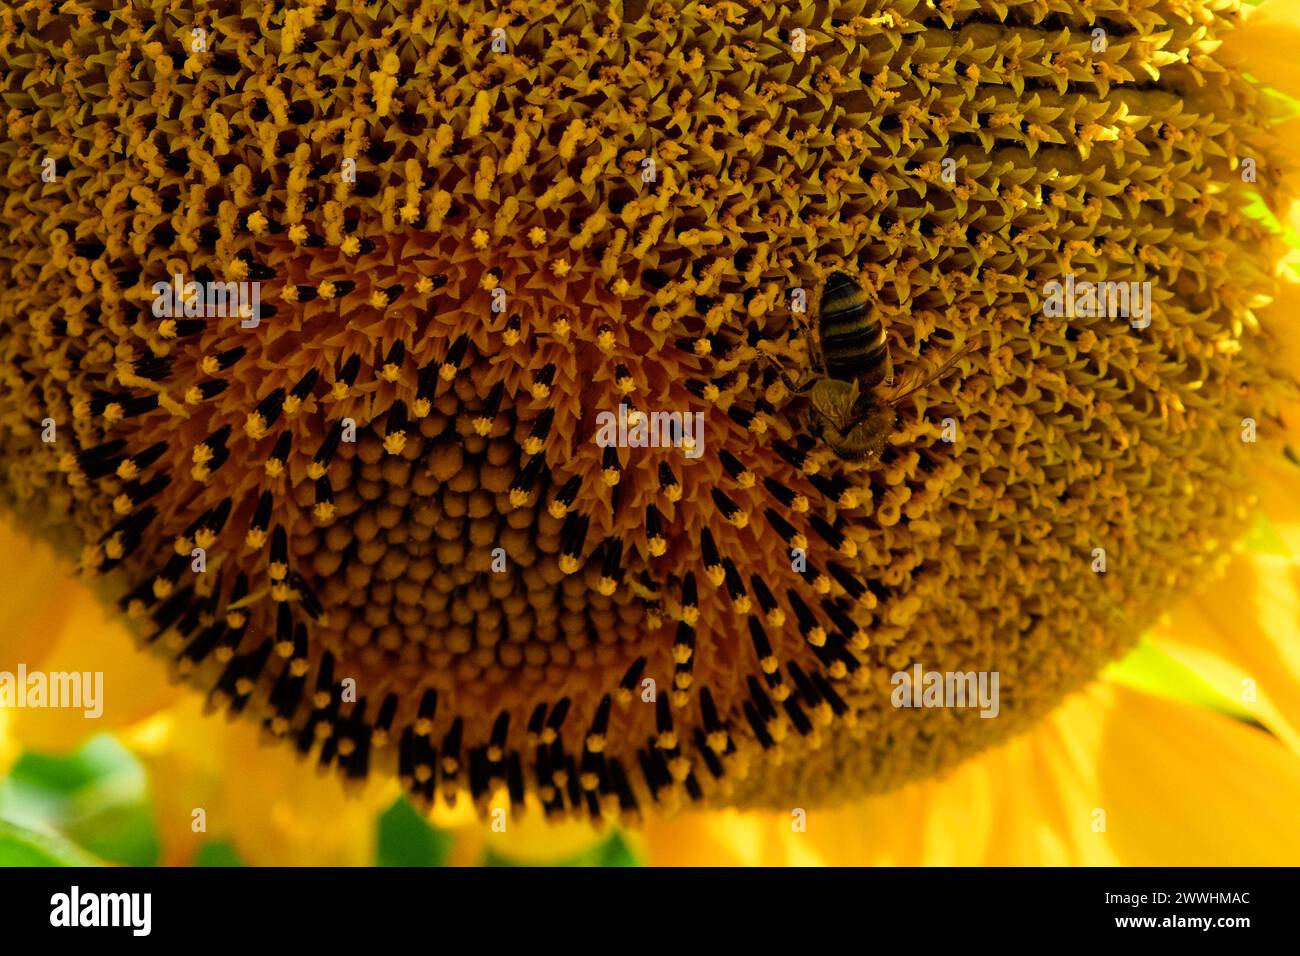 Das komplizierte Samenmuster einer Sonnenblume wird hervorgehoben, wenn eine Biene Pollen sammelt. Stockfoto